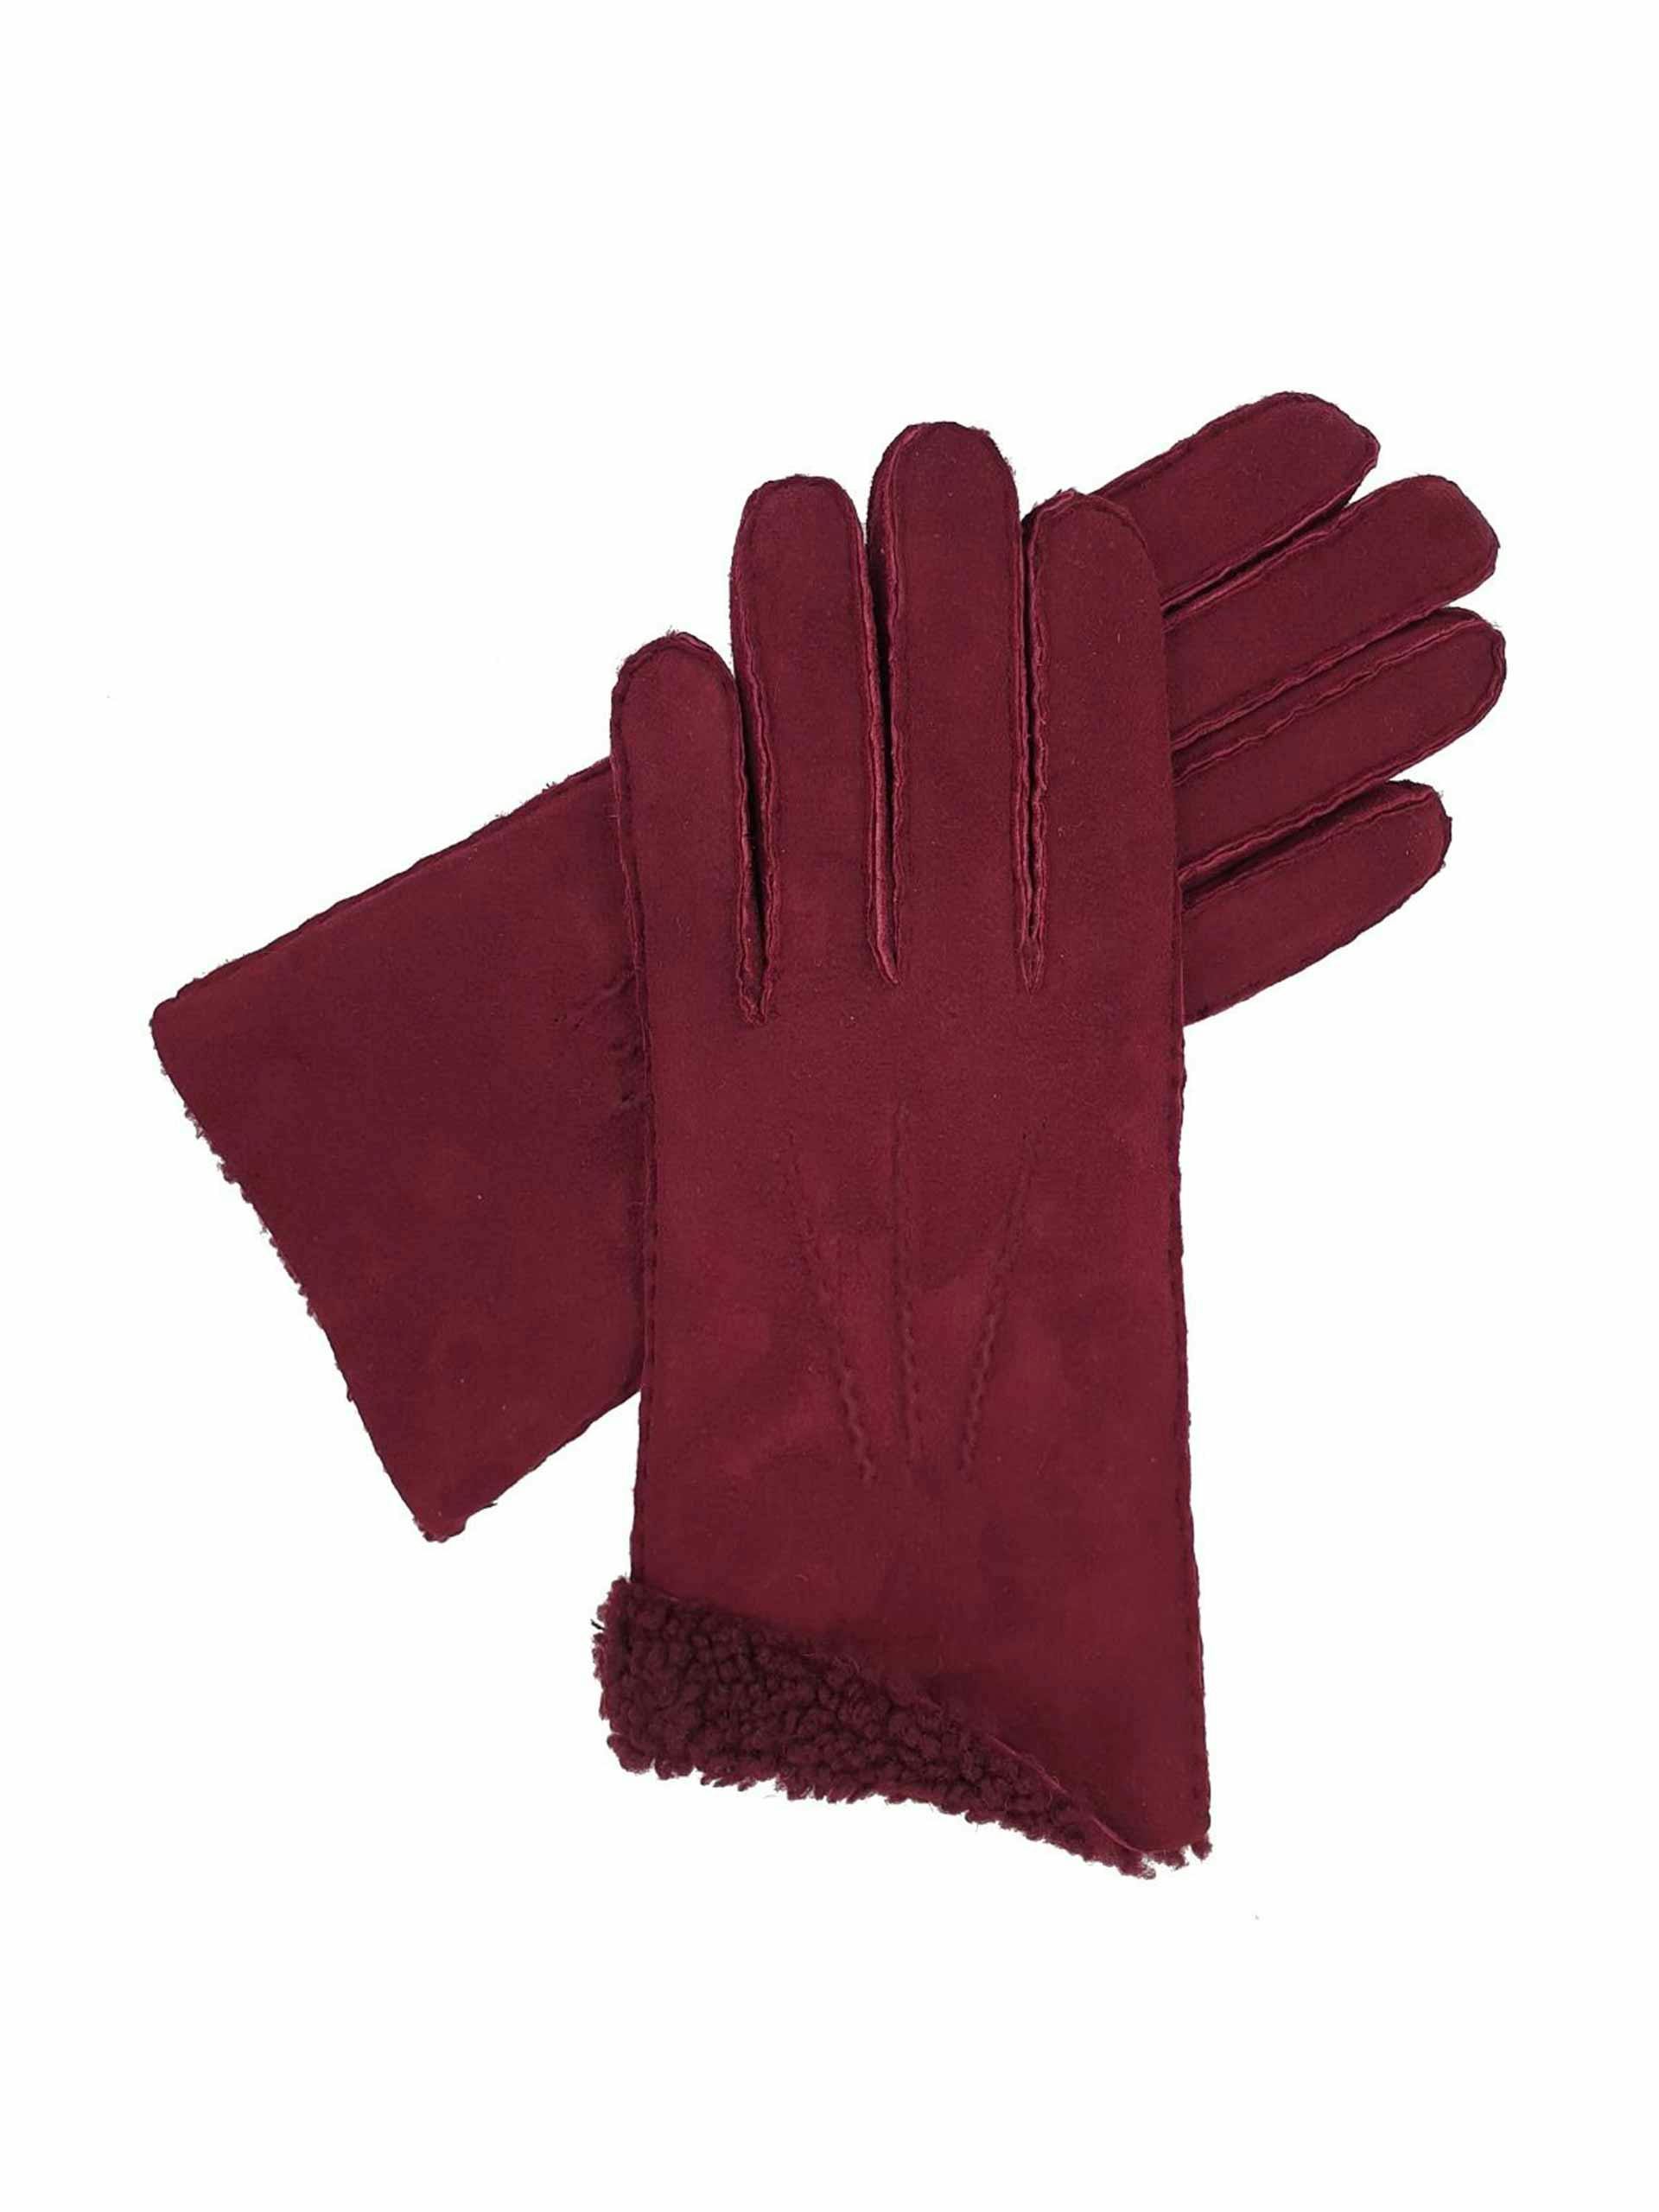 Fern - sueded sheepskin gloves